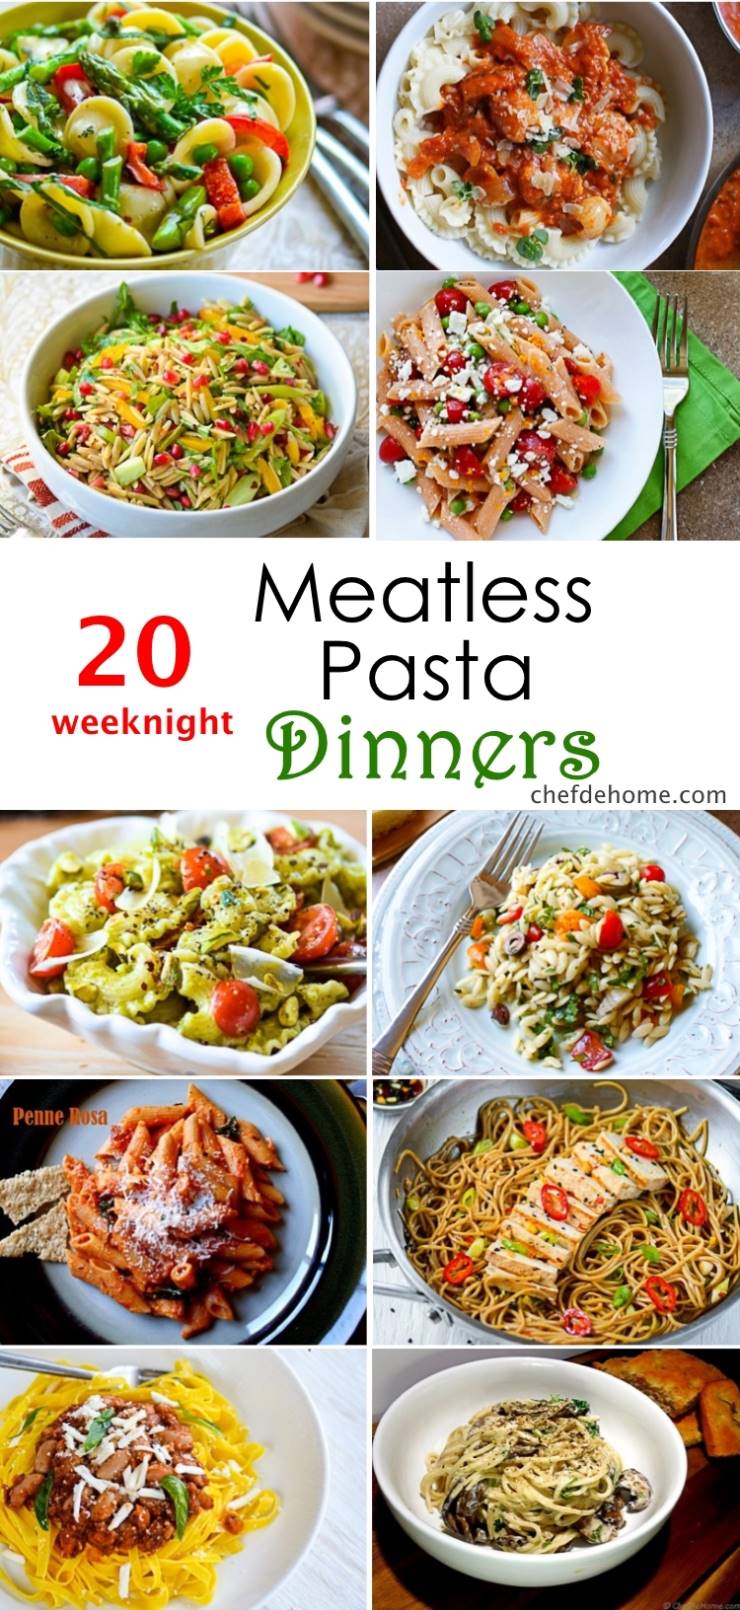 20 Weeknight Meatless Pasta Dinner Ideas